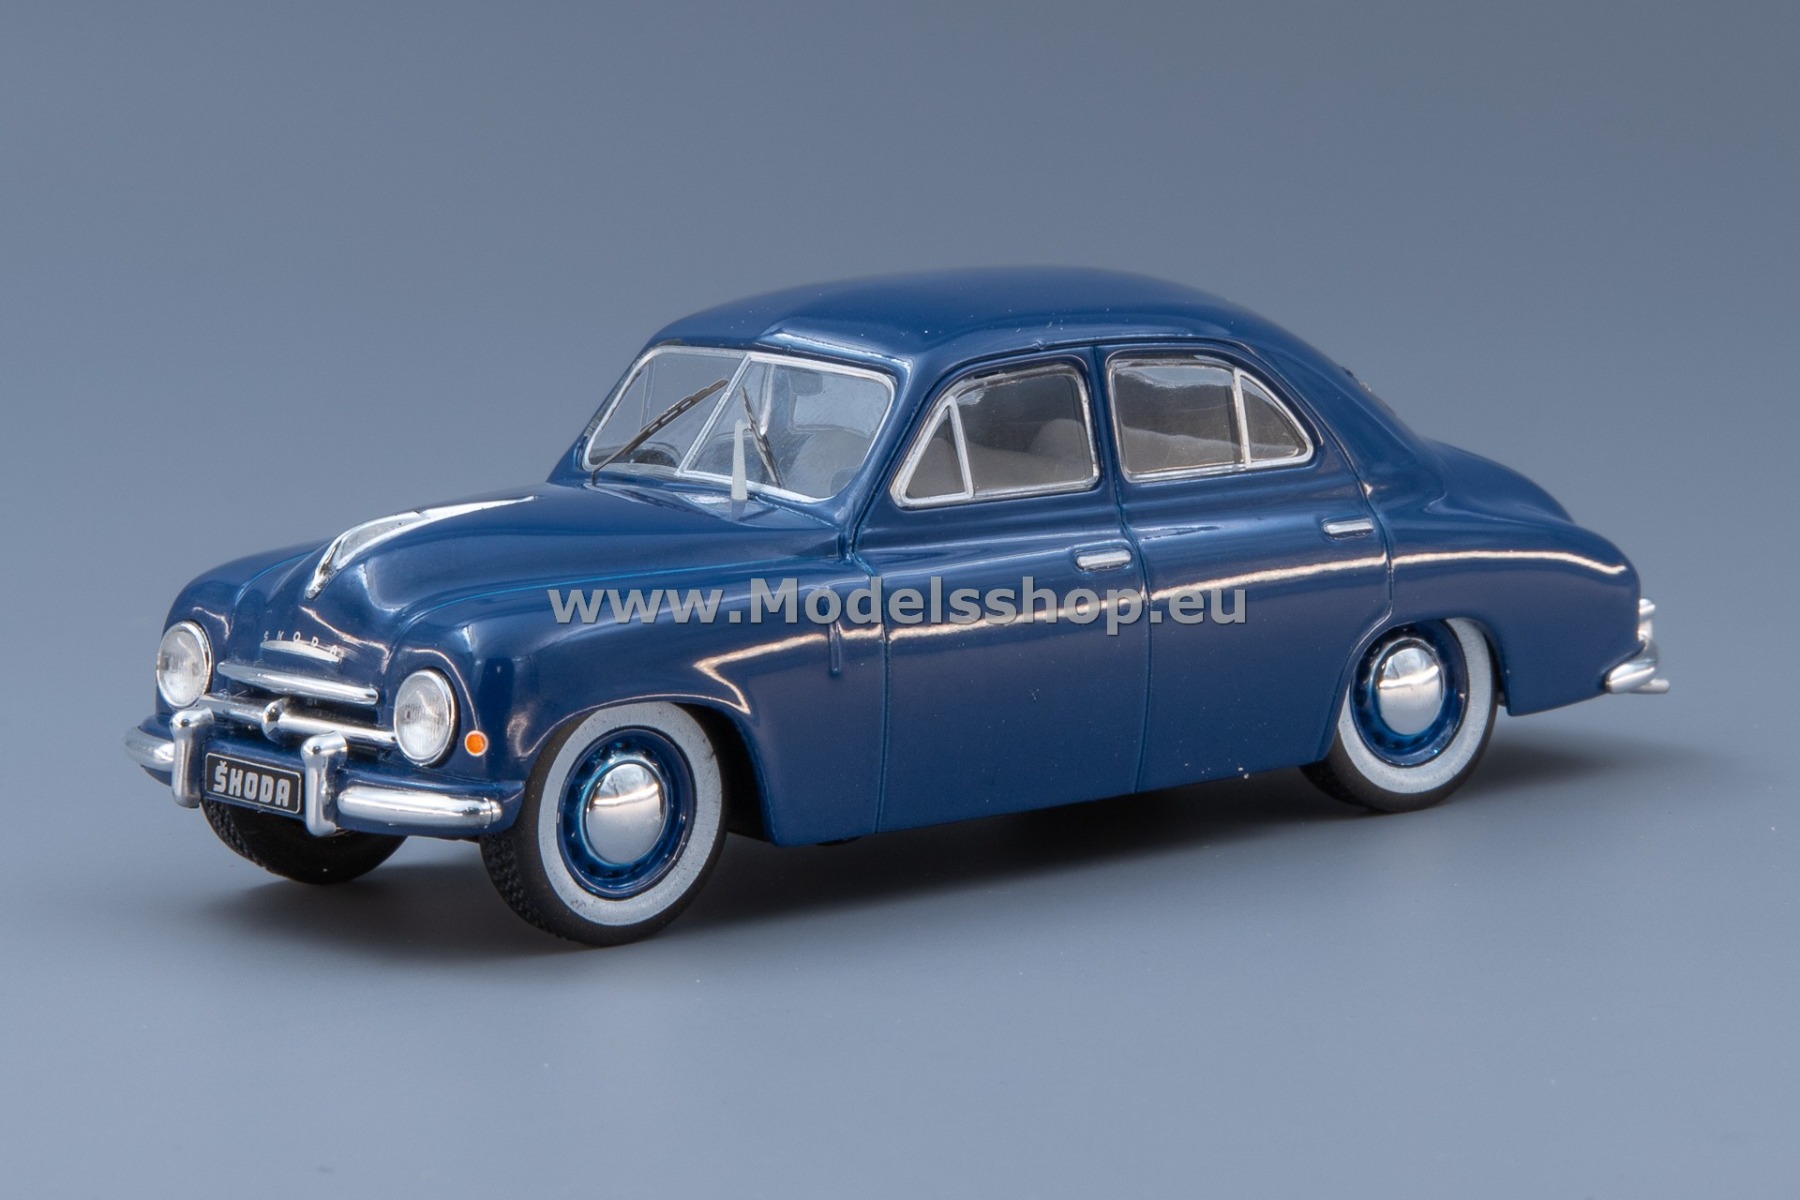 IXO CLC496N.22 Skoda 1200 Sedan, 1952 /blue/